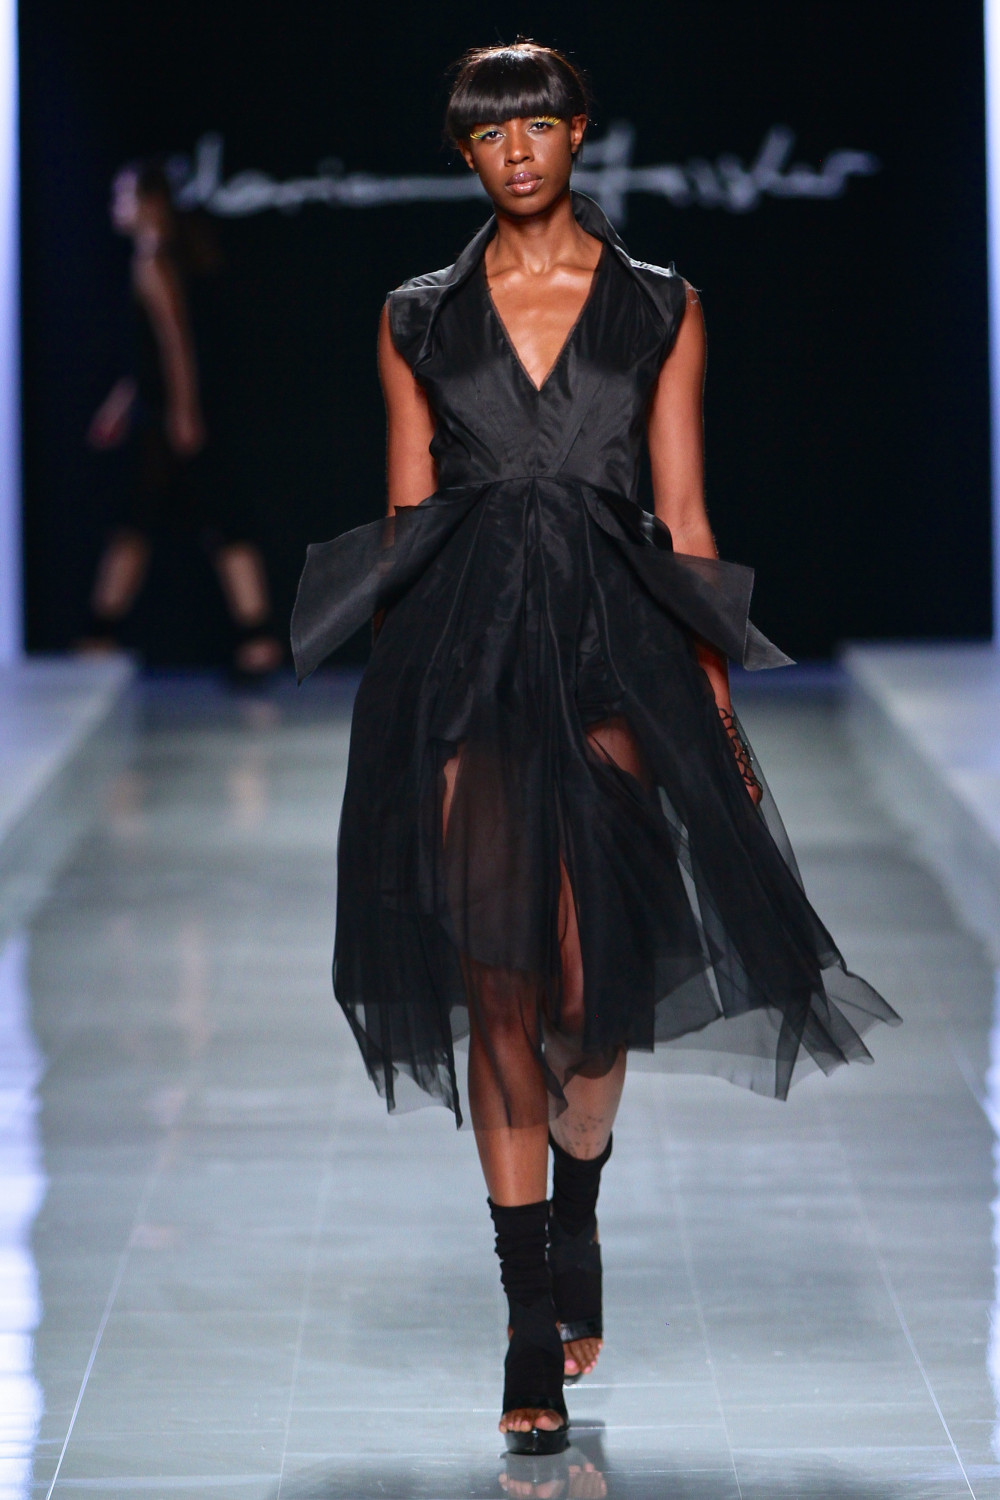 Mercedes-Benz Fashion Week Africa 2014 – Day 2: Marianne Fassler ...